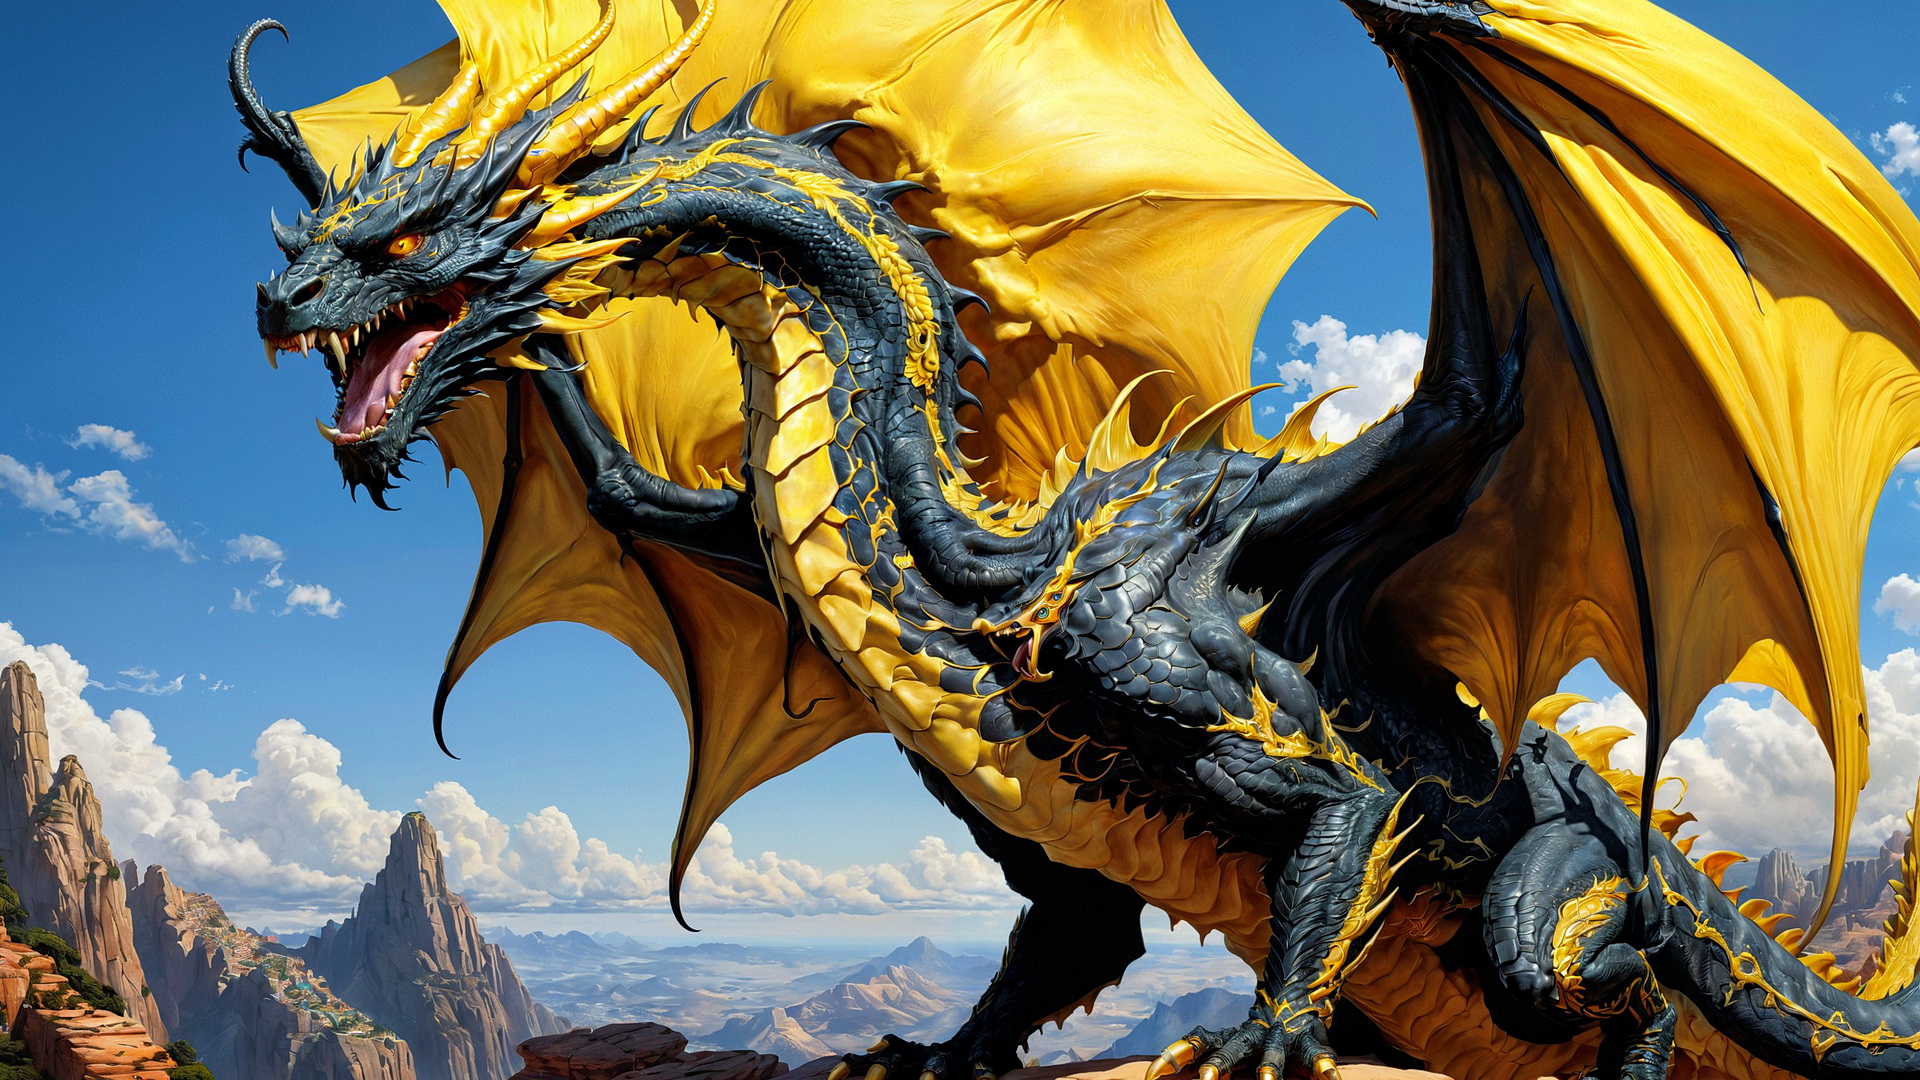 Бесплатное фото Дракон с желтыми крыльями на фоне голубого неба и гор